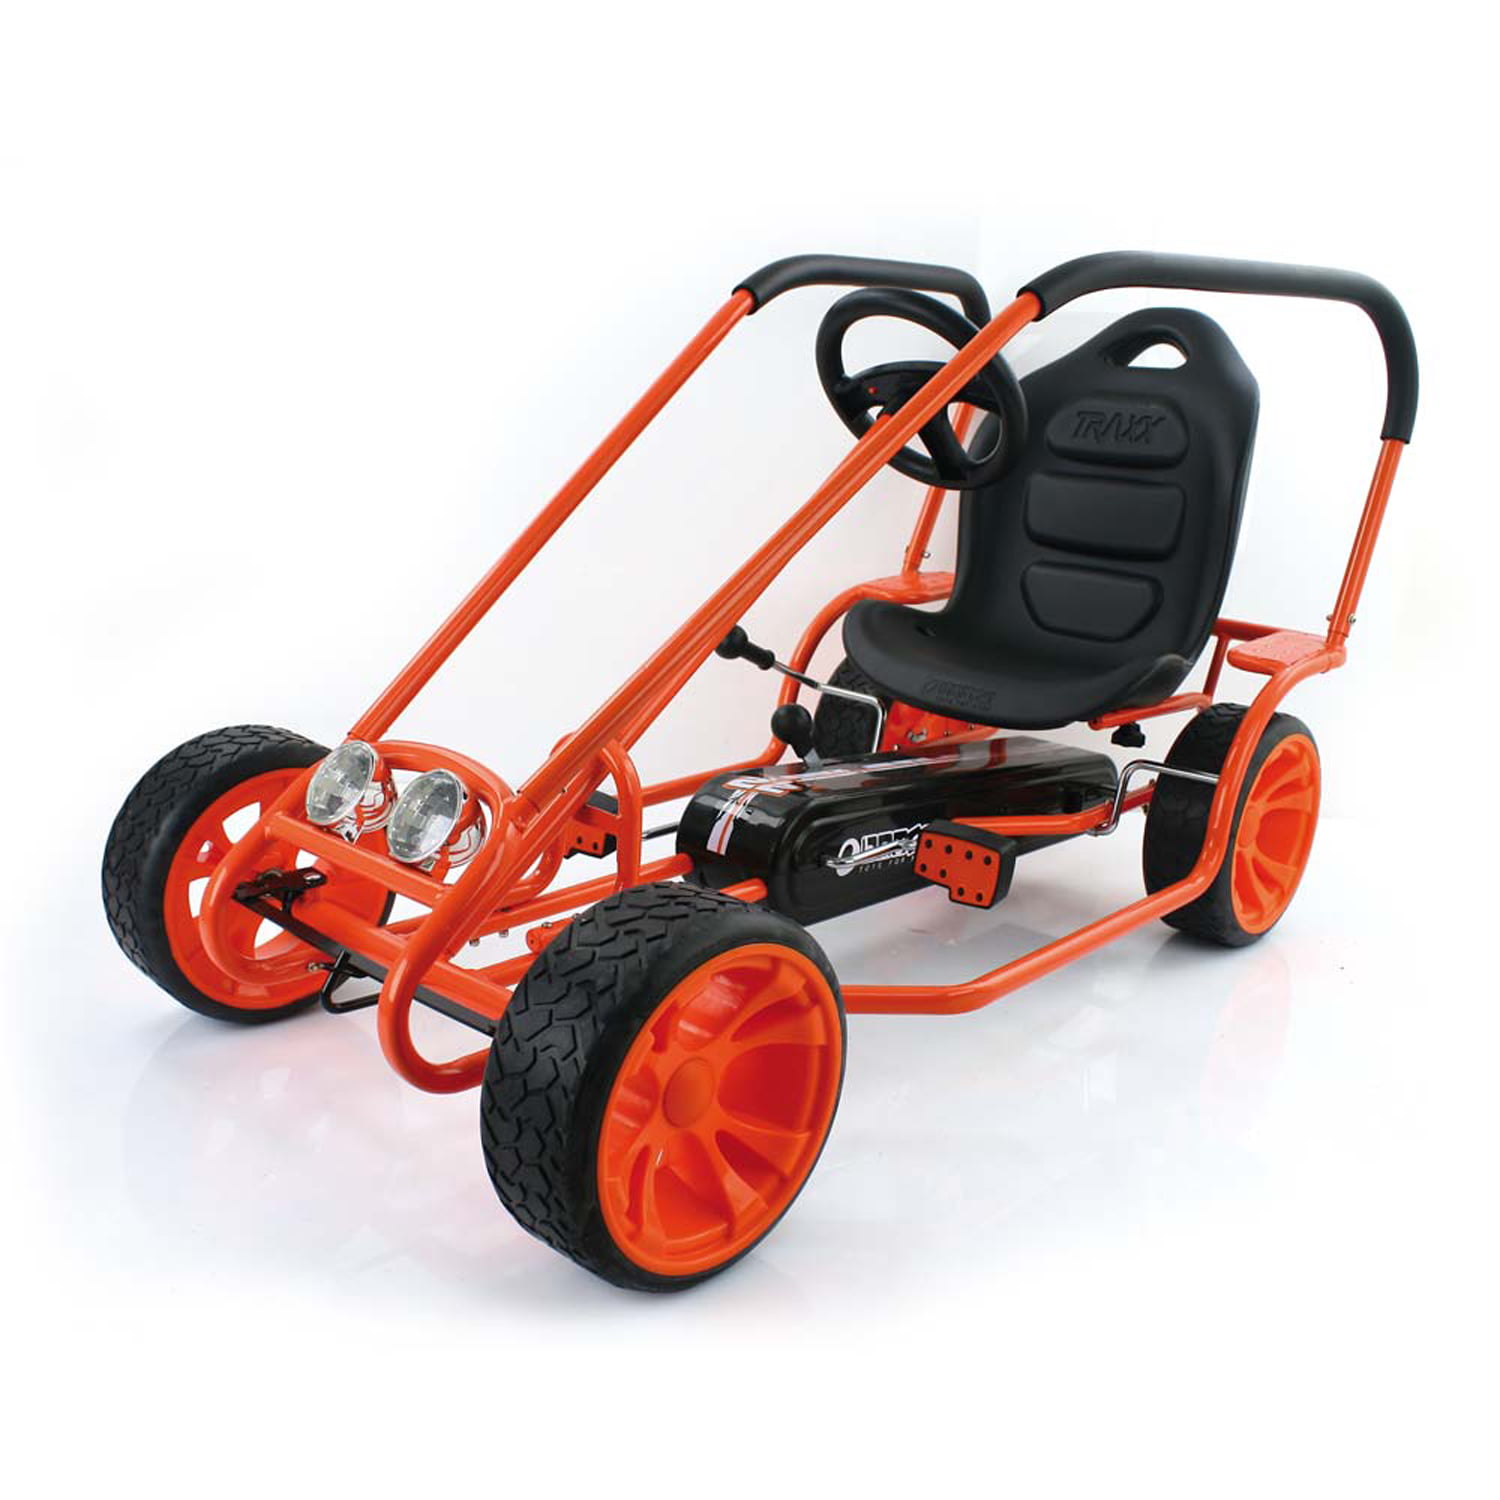 Hauck Thunder II Ride-On Pedal Go-Kart, Orange